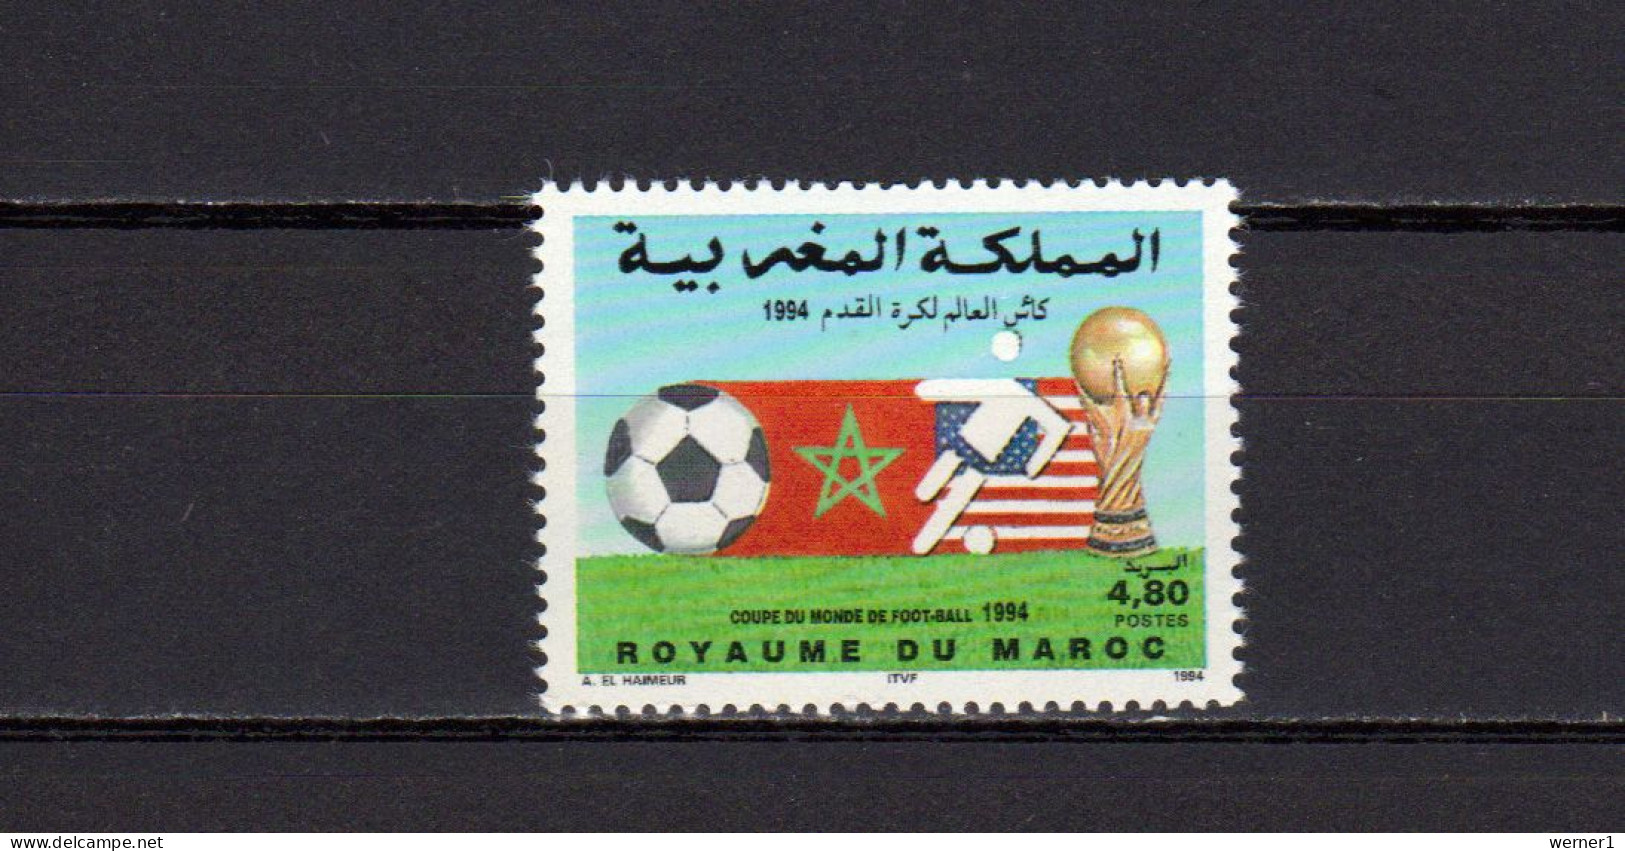 Morocco 1994 Football Soccer World Cup Stamp MNH - 1994 – USA